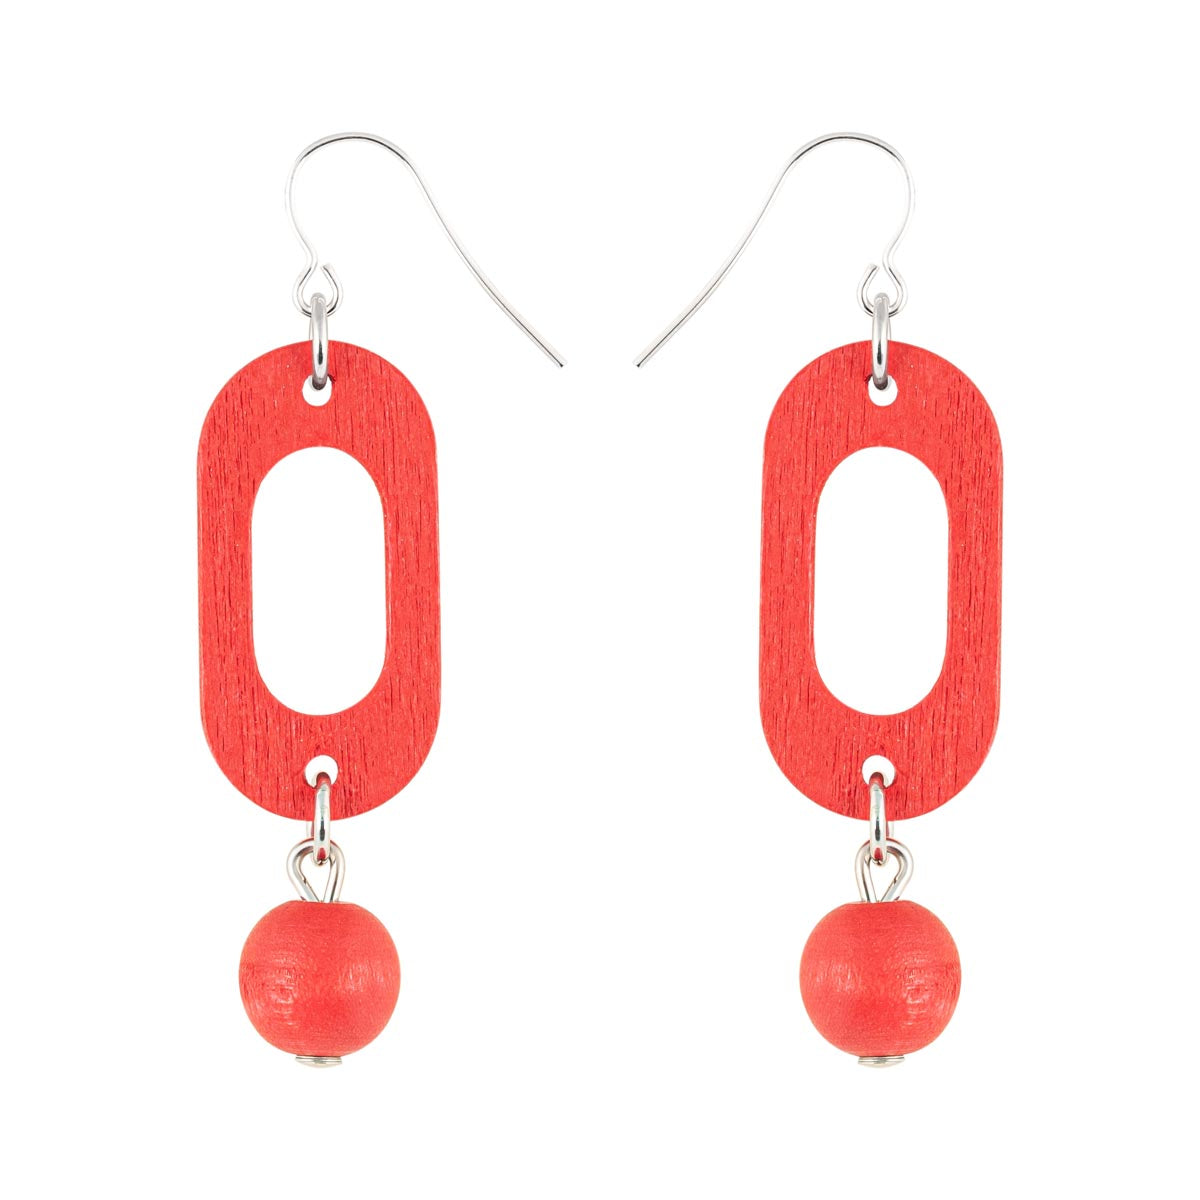 Meea earrings, red